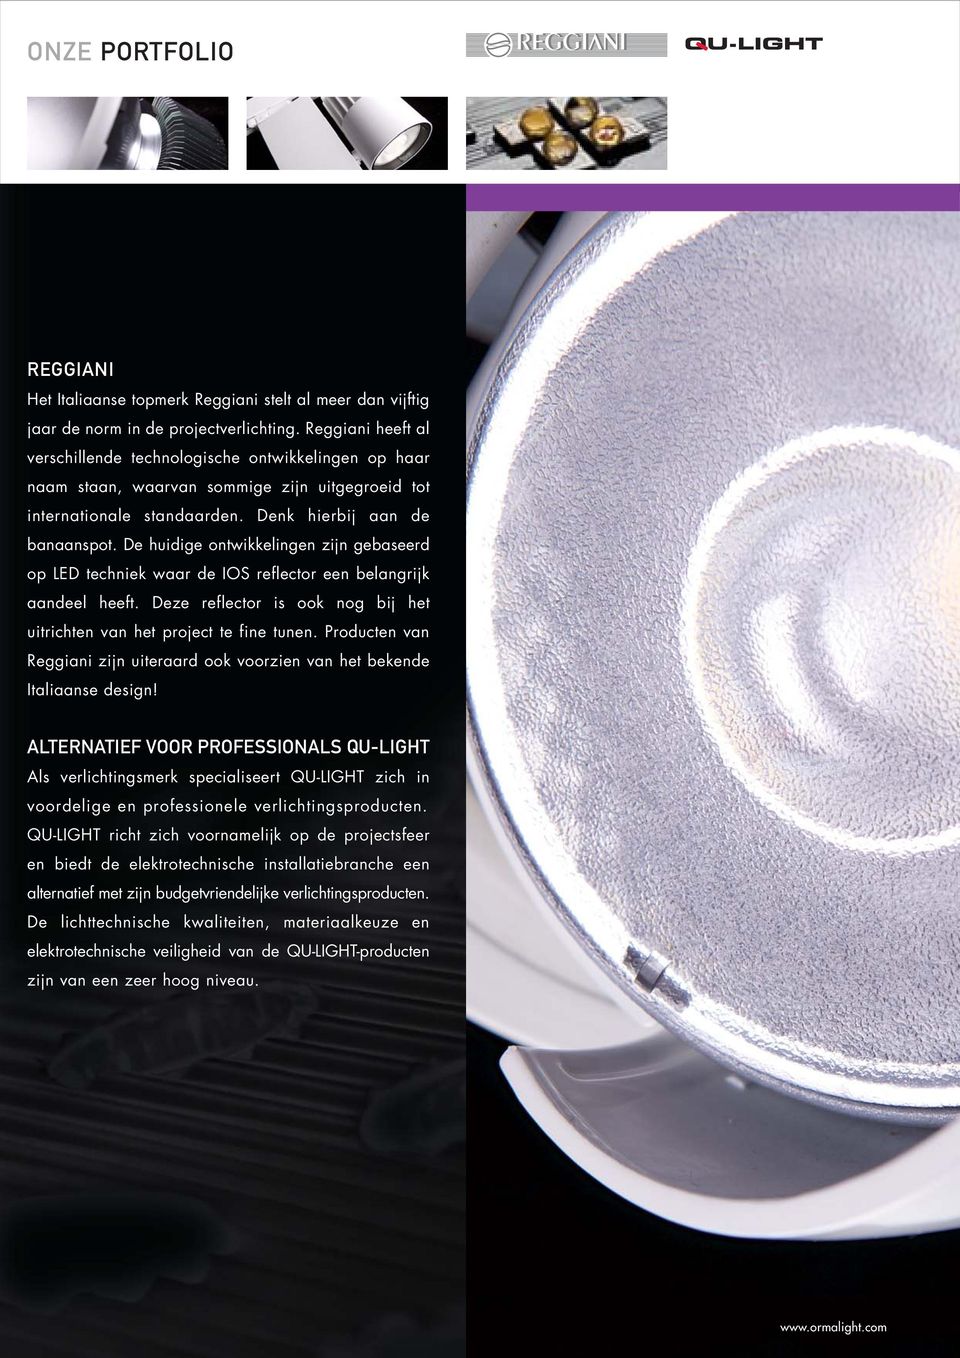 De huidige ontwikkelingen zijn gebaseerd op LED techniek waar de IOS reflector een belangrijk aandeel heeft. Deze reflector is ook nog bij het uitrichten van het project te fine tunen.